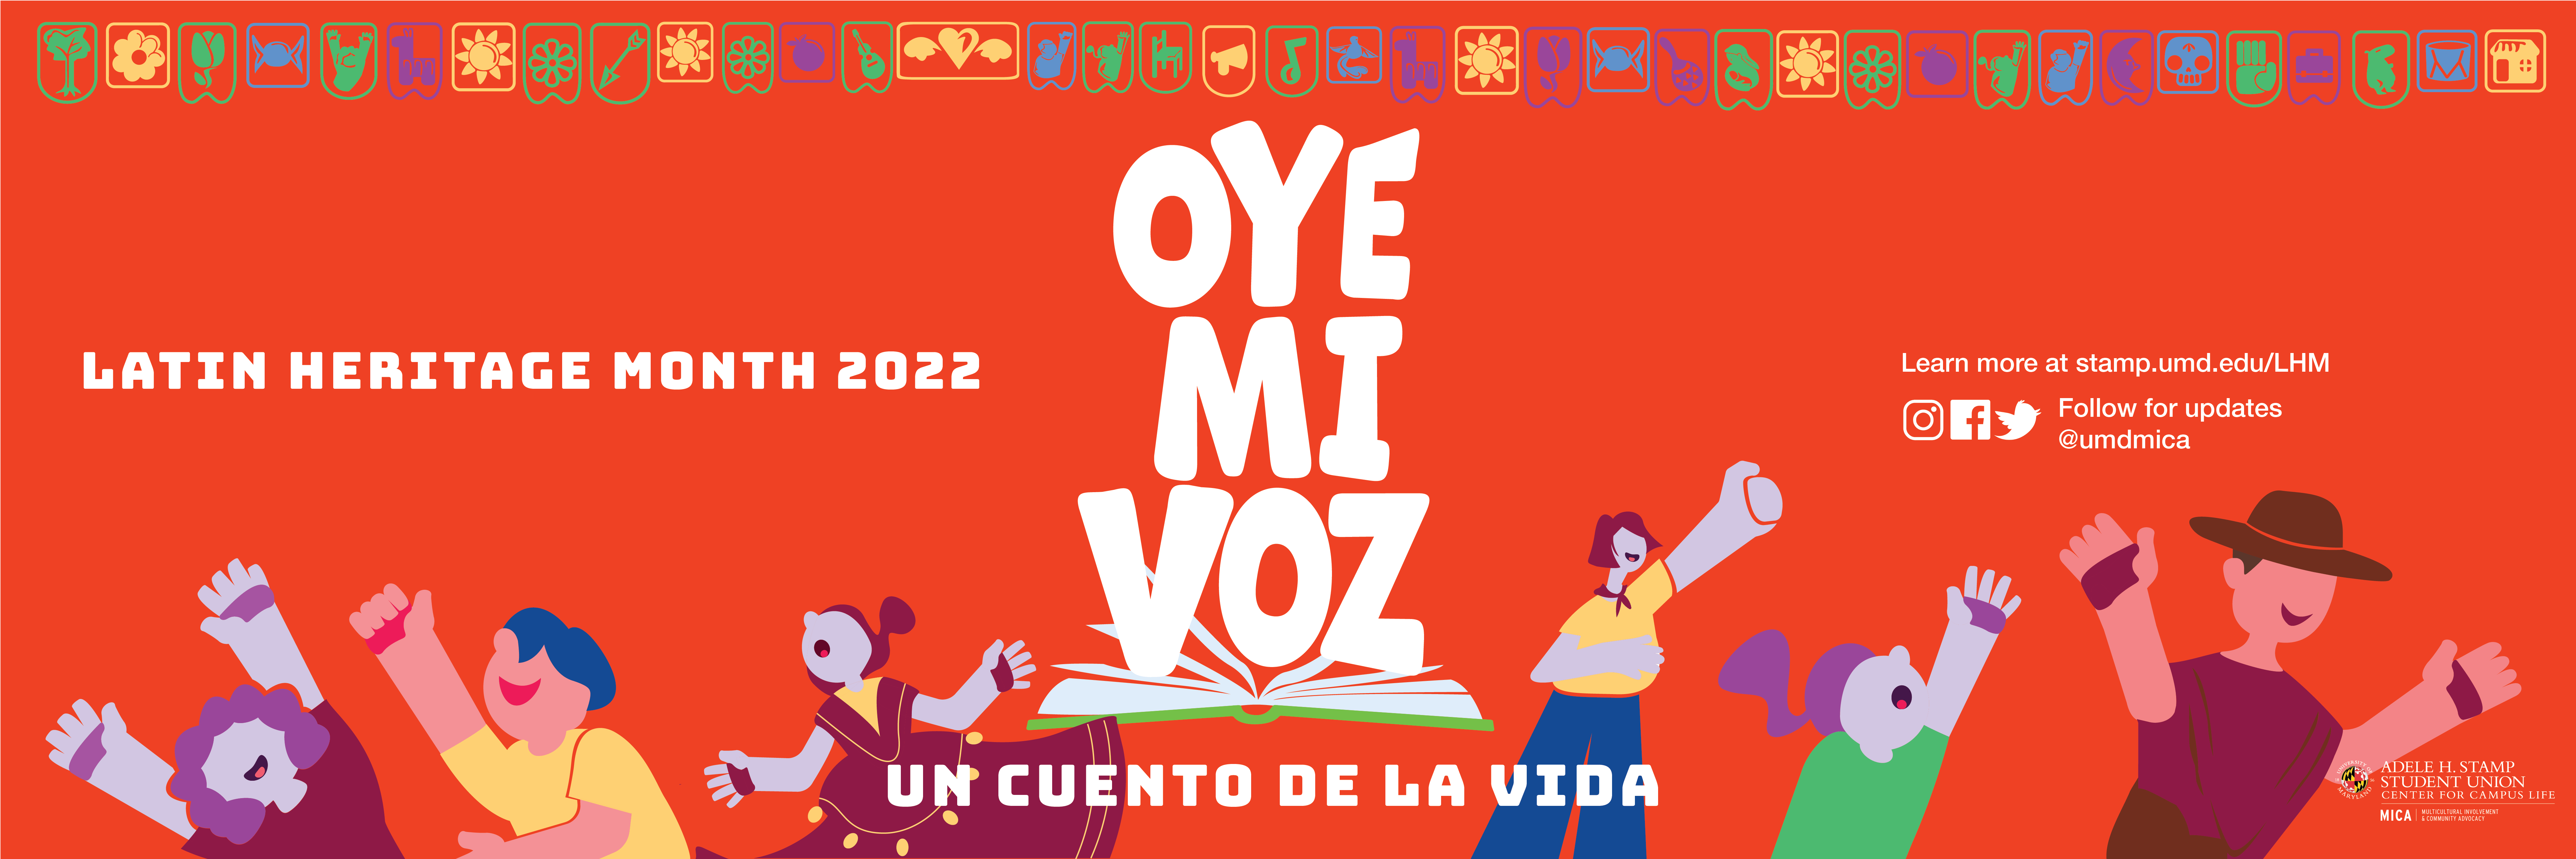 Latinx Heritage Month Banner: Oye Mi Voz, Un Cuento de la Vida. Images of people celebrating.